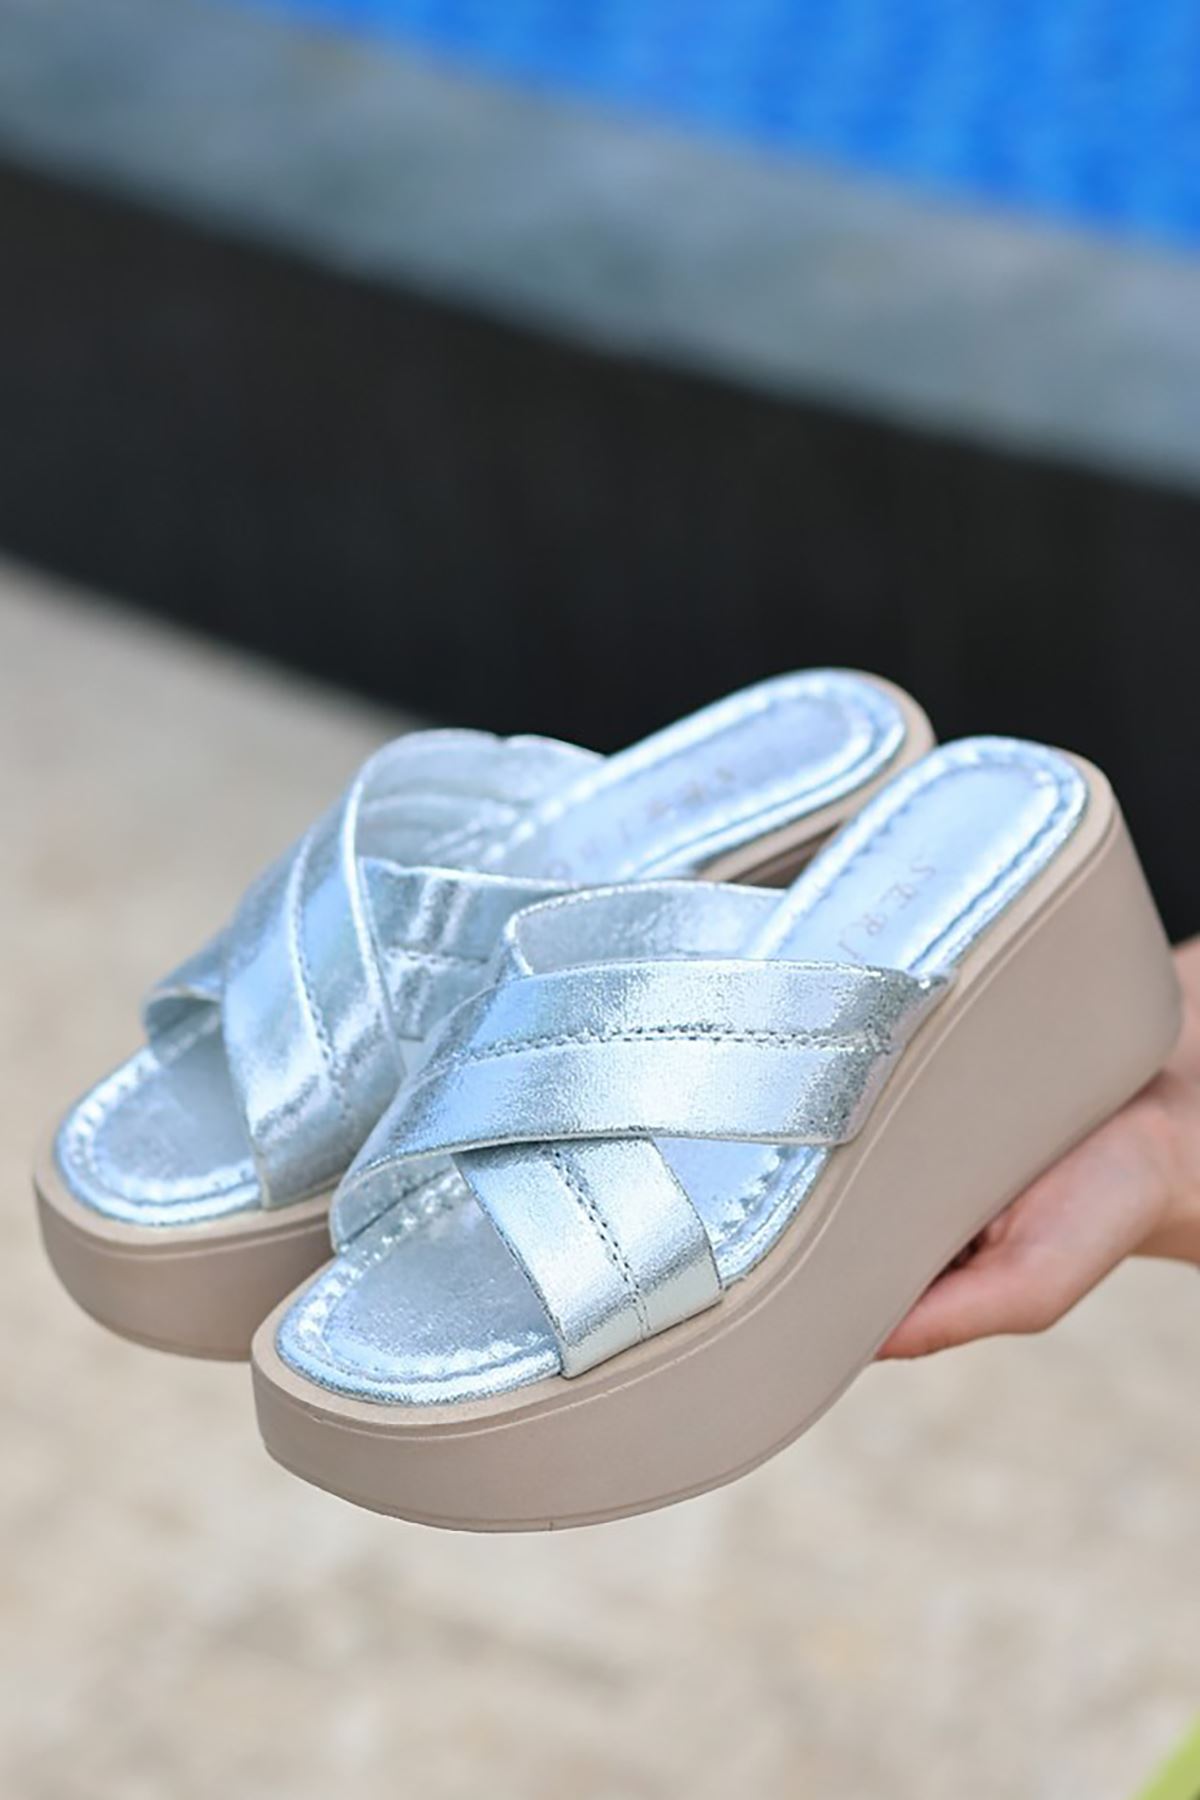 Mida Shoes ERBOben Gümüş Deri Kadın Dolgu Topuk Terlik